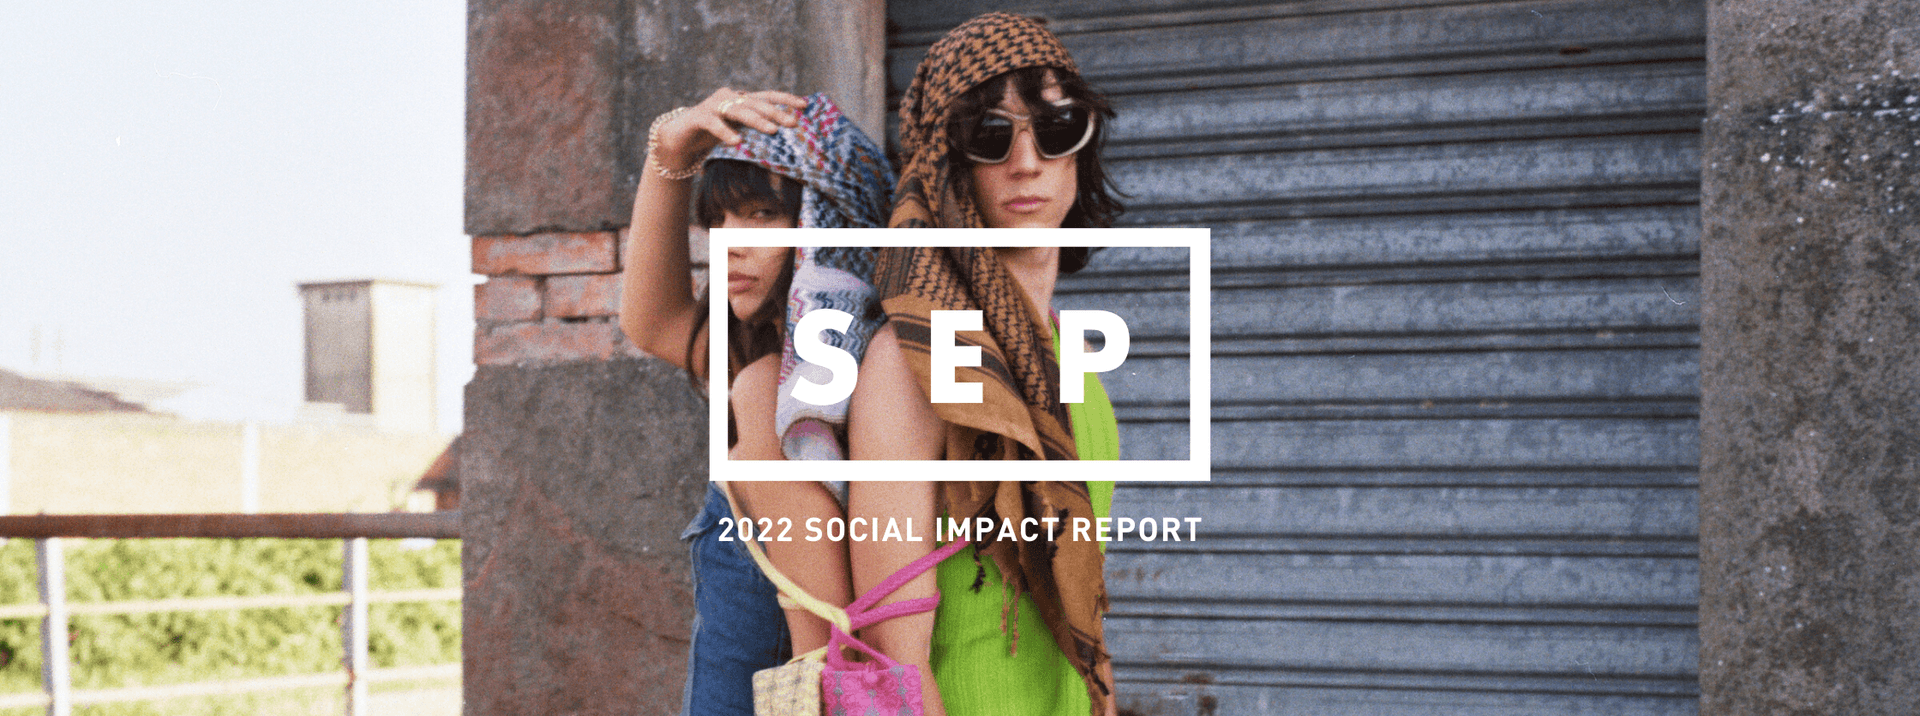 2022 SOCIAL IMPACT REPORT